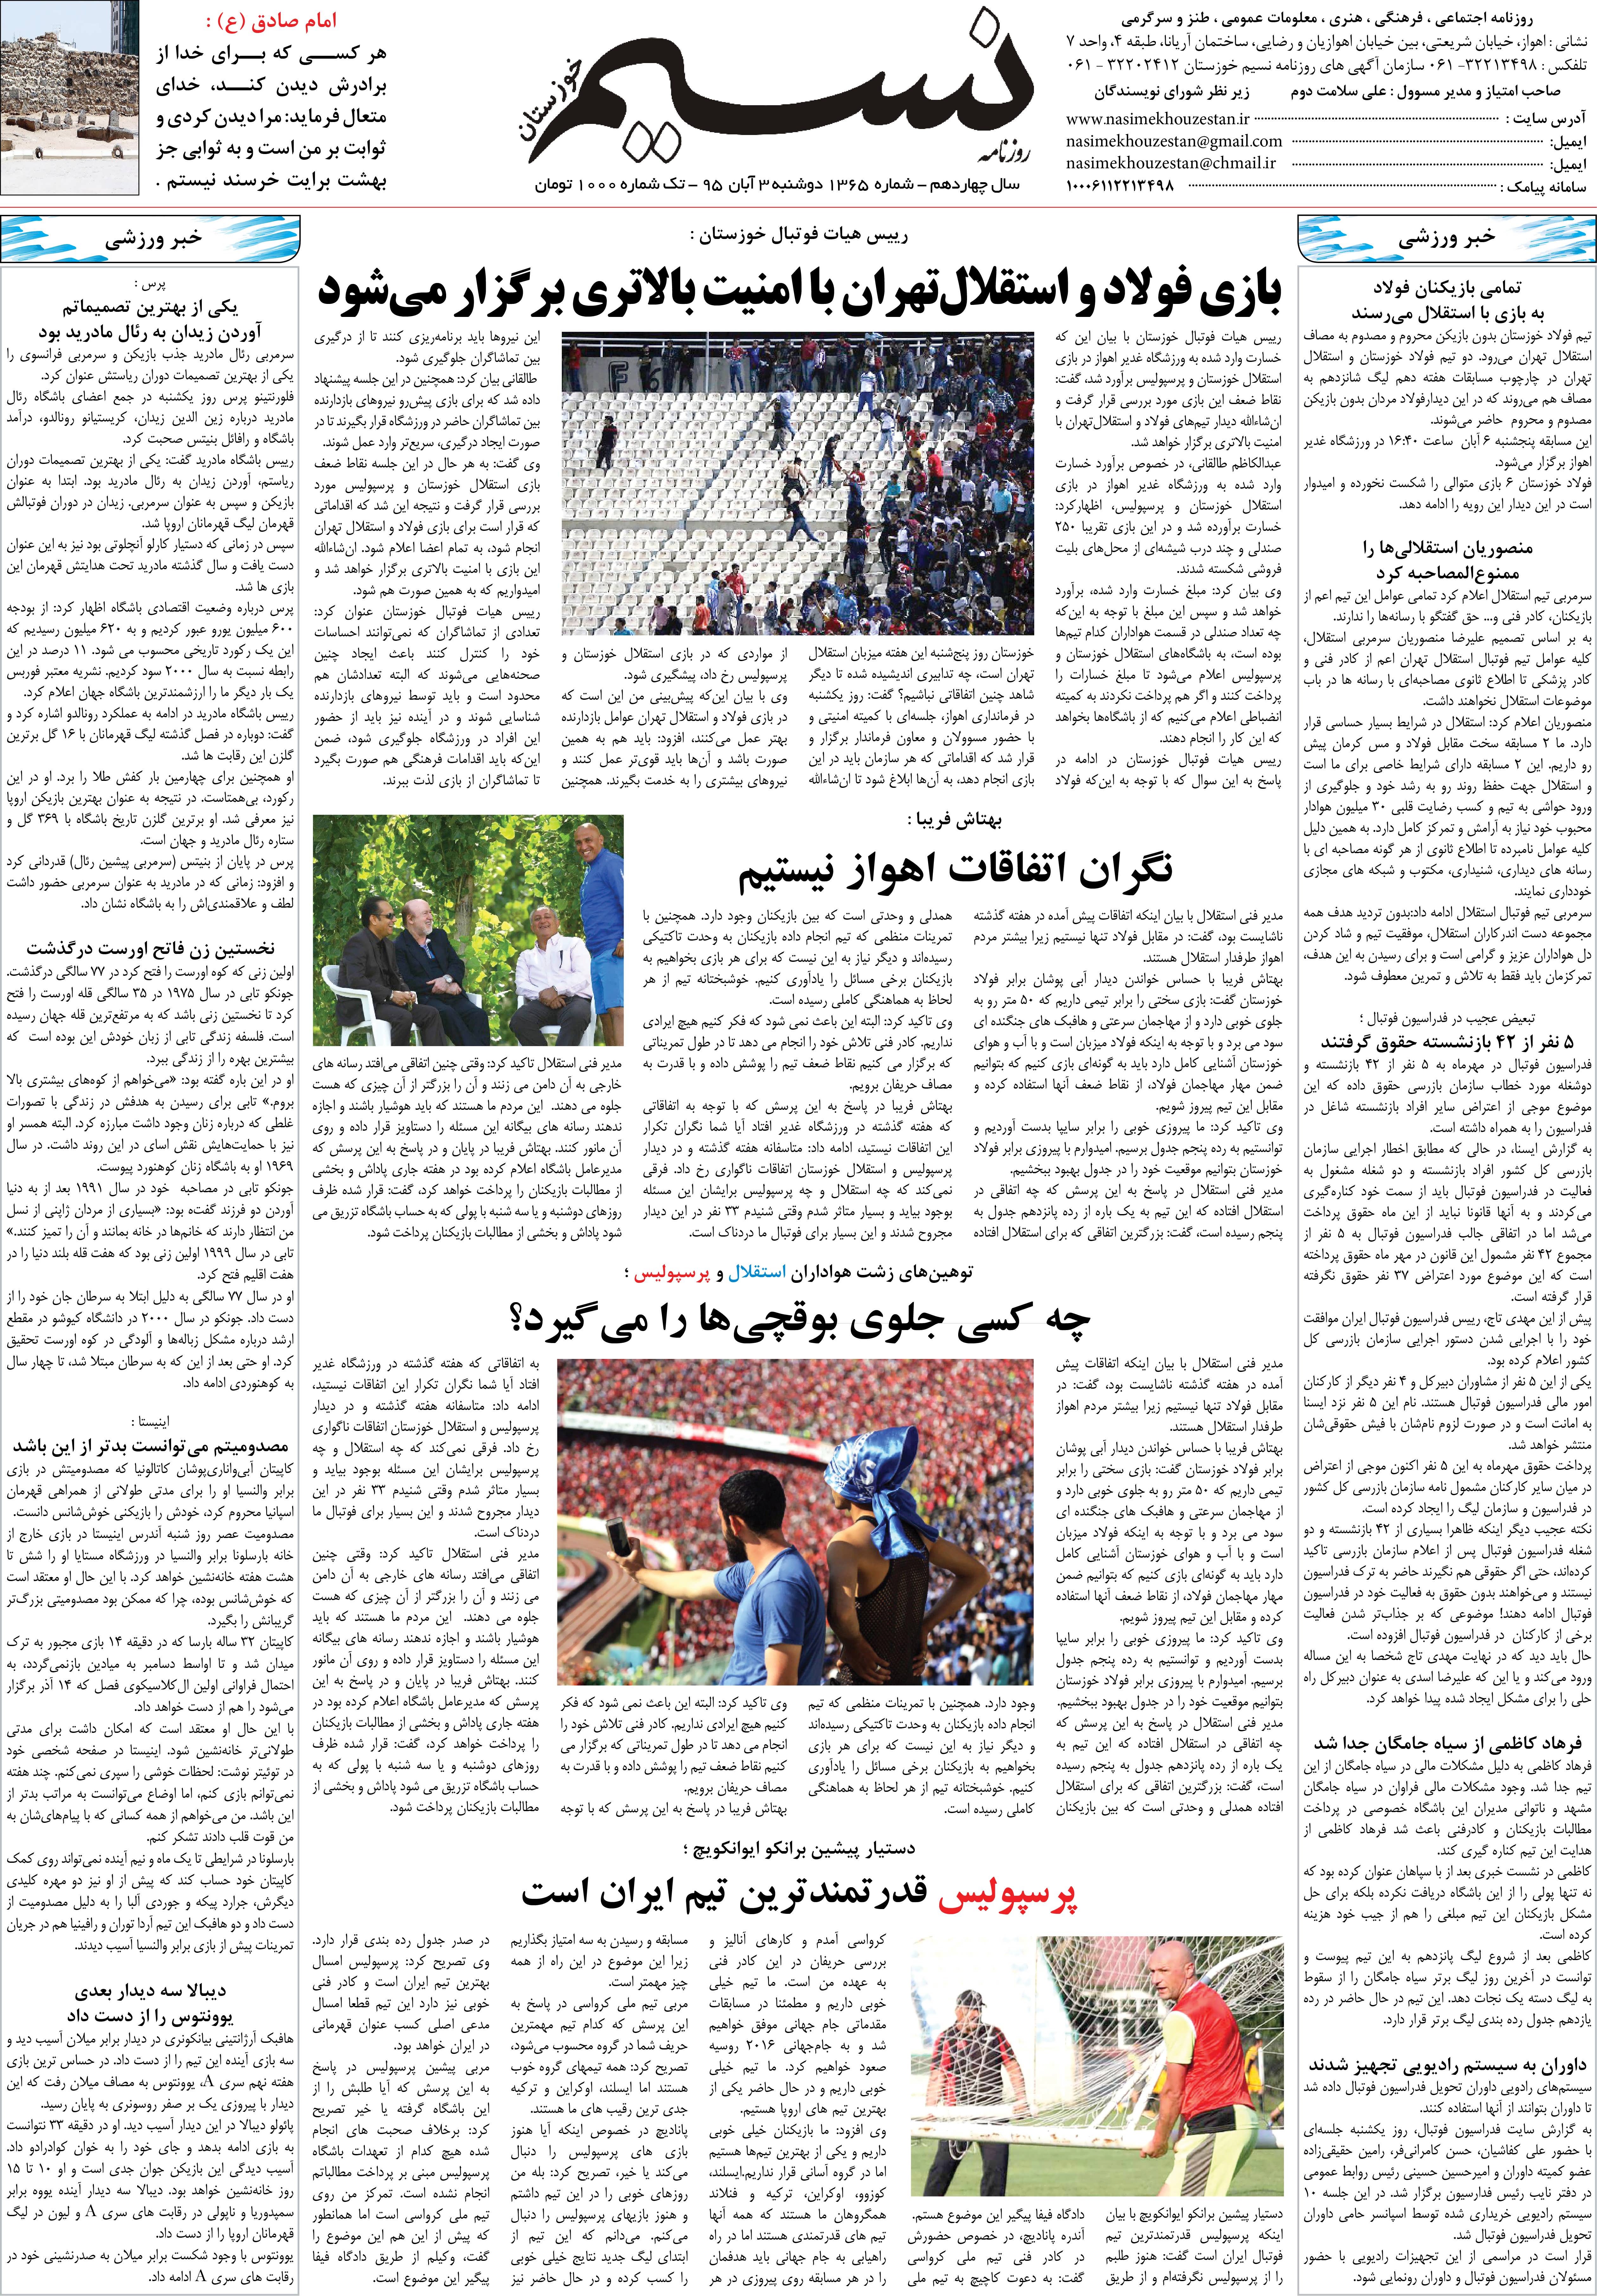 صفحه آخر روزنامه نسیم شماره 1365